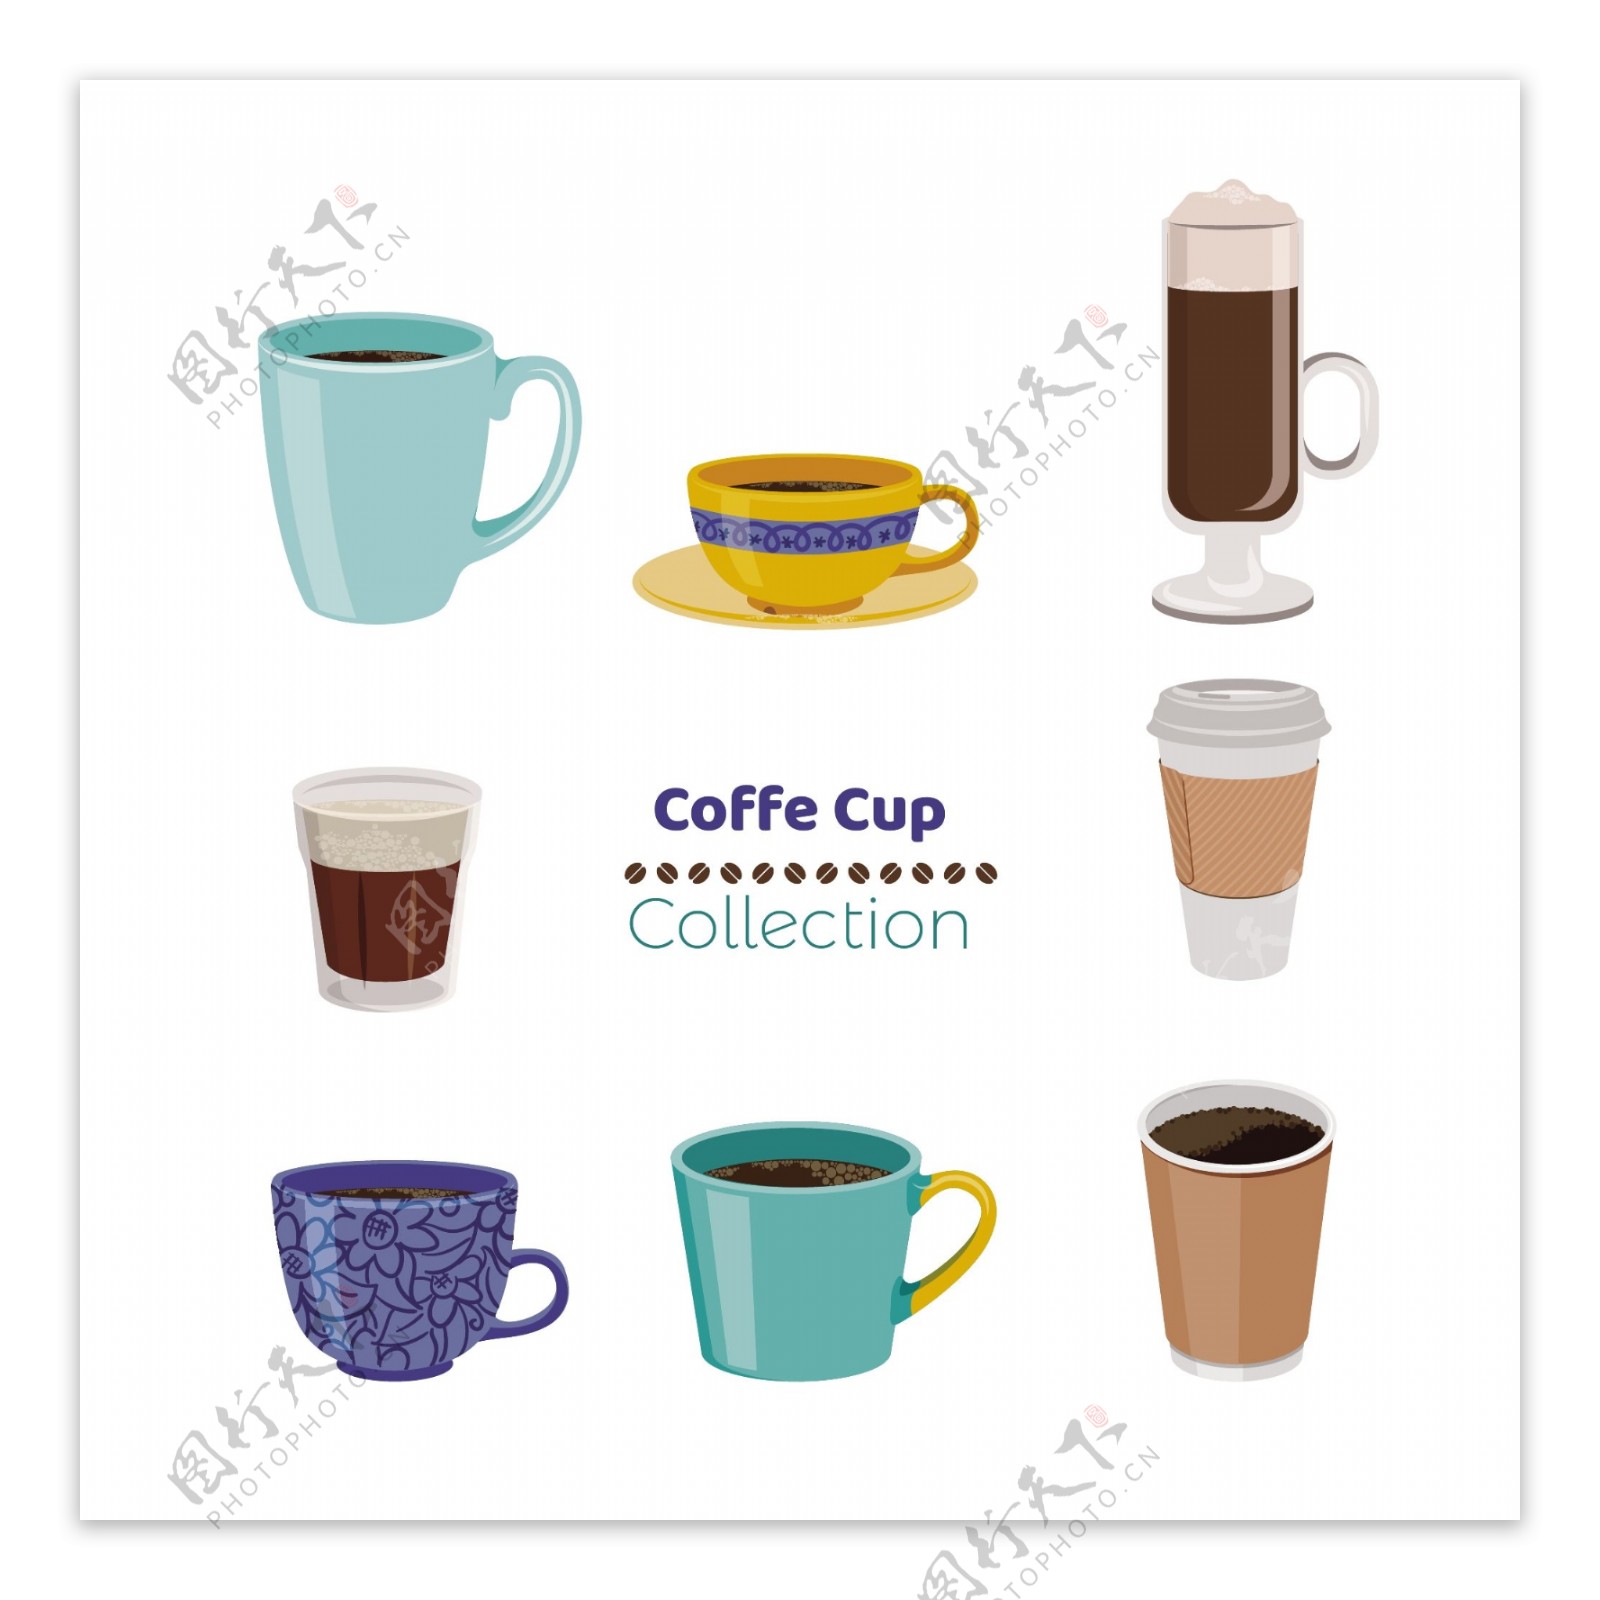 8款不同彩色卡通咖啡杯元素设计